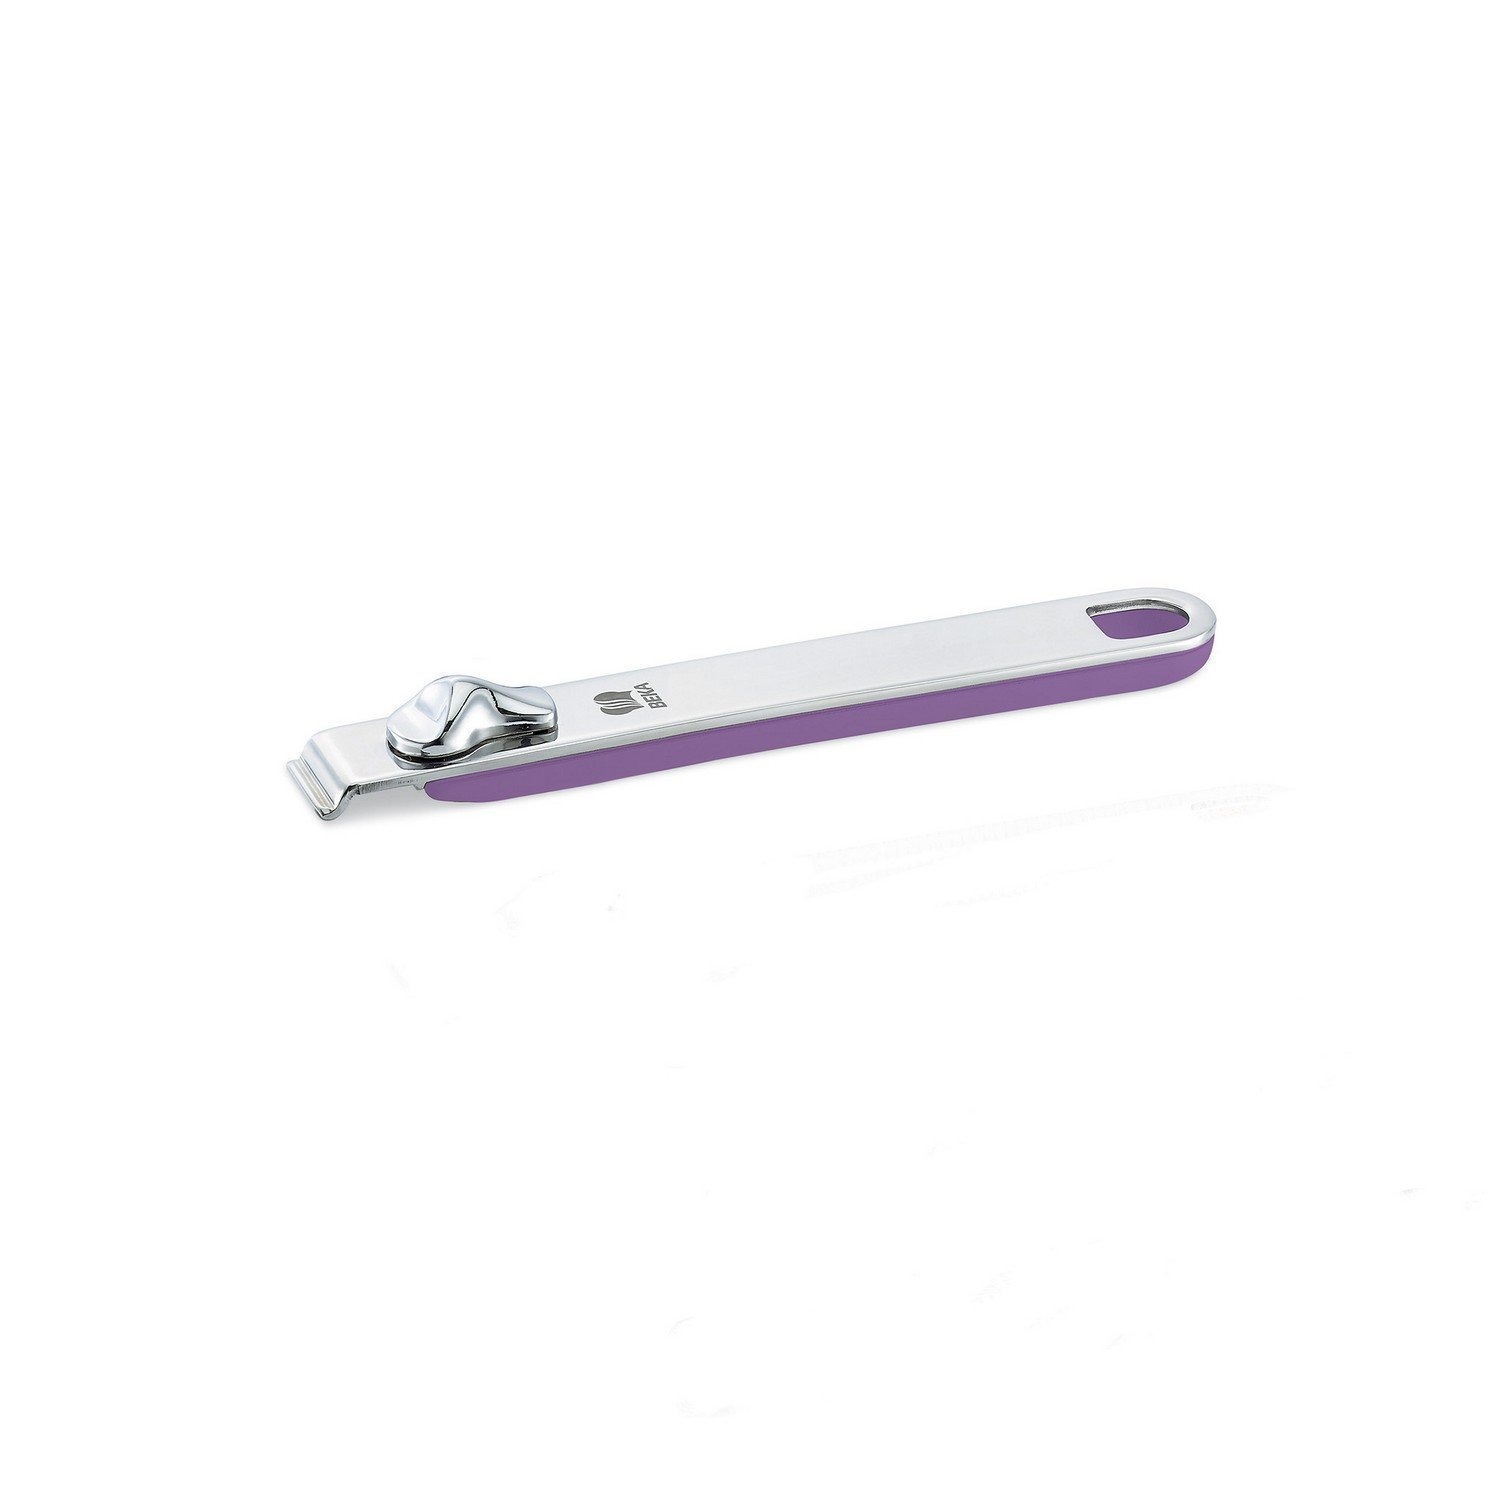 Ручка съемная длинная Beka select фиолетовая 18,5 см ниблер для прикорма с силиконовой сеточкой ручка погремушка фиолетовый